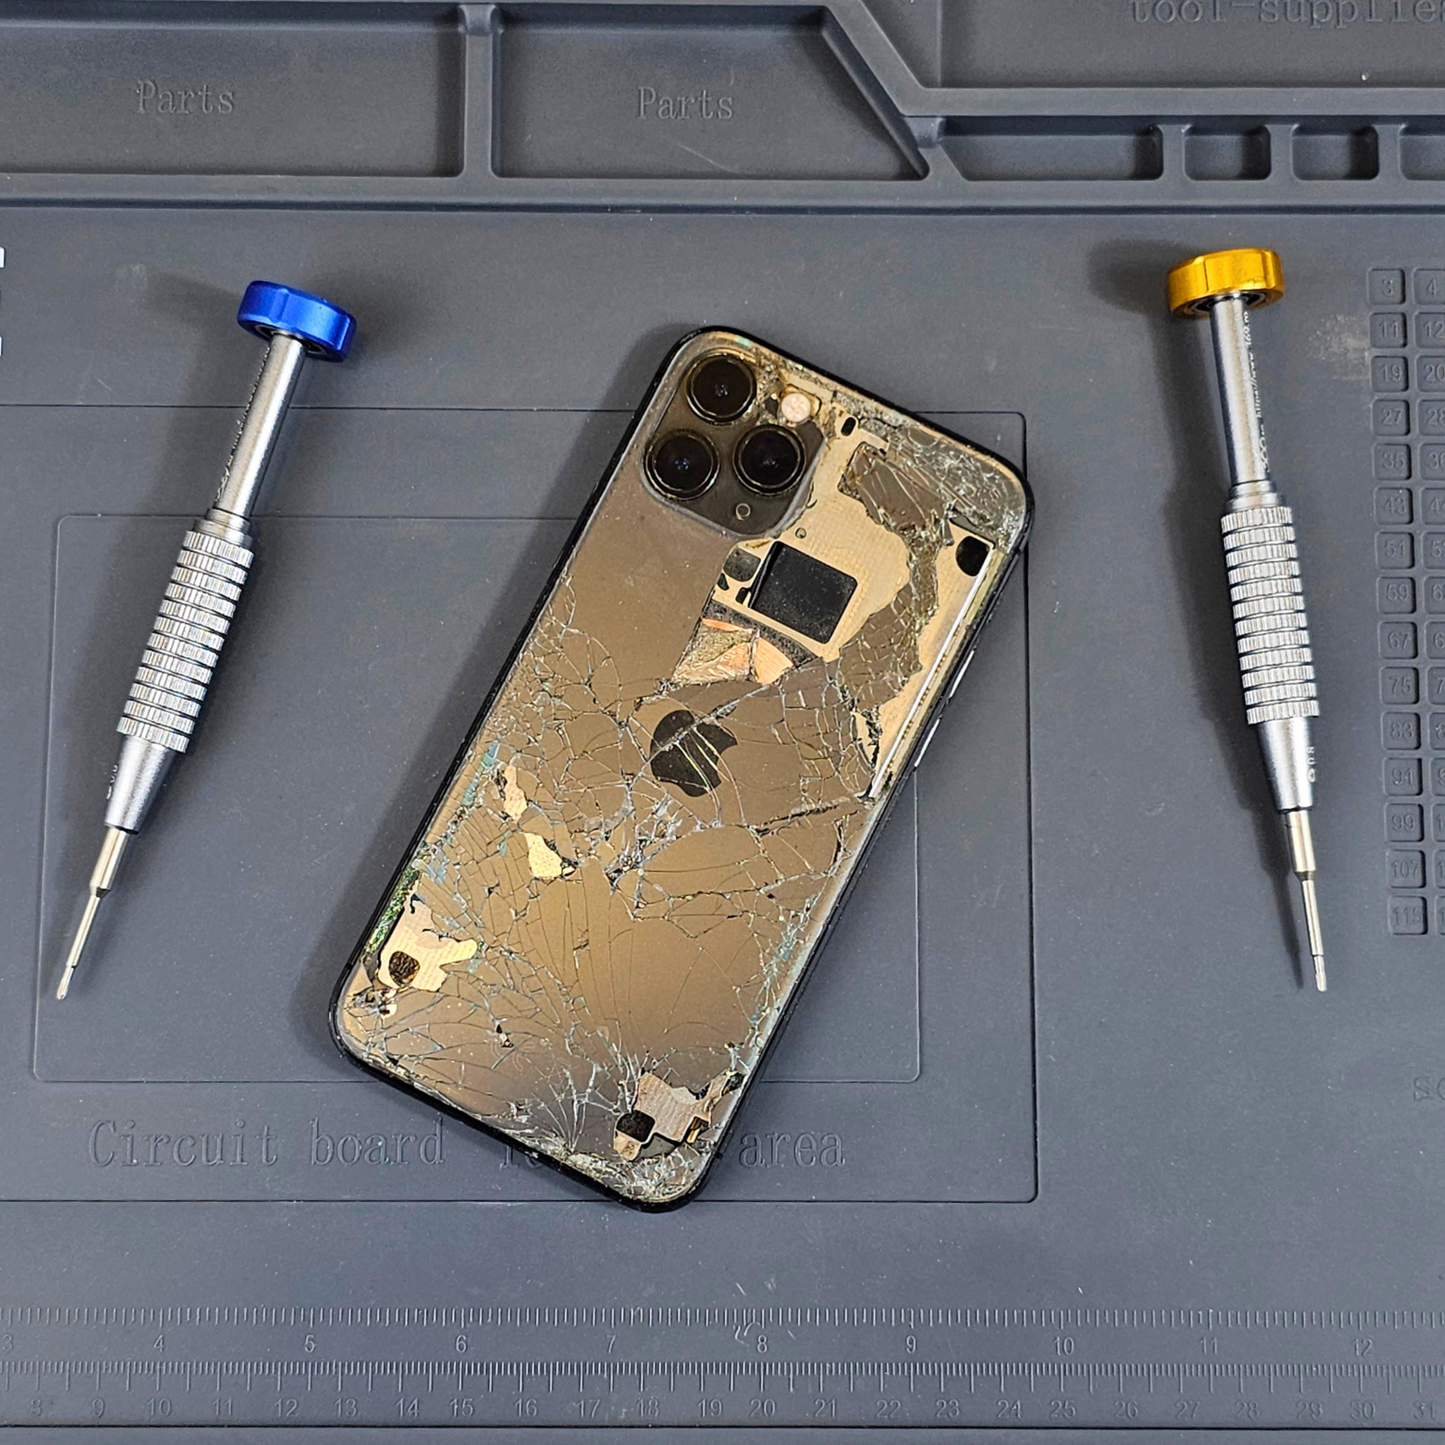 Phone Repair & Unlocking Course